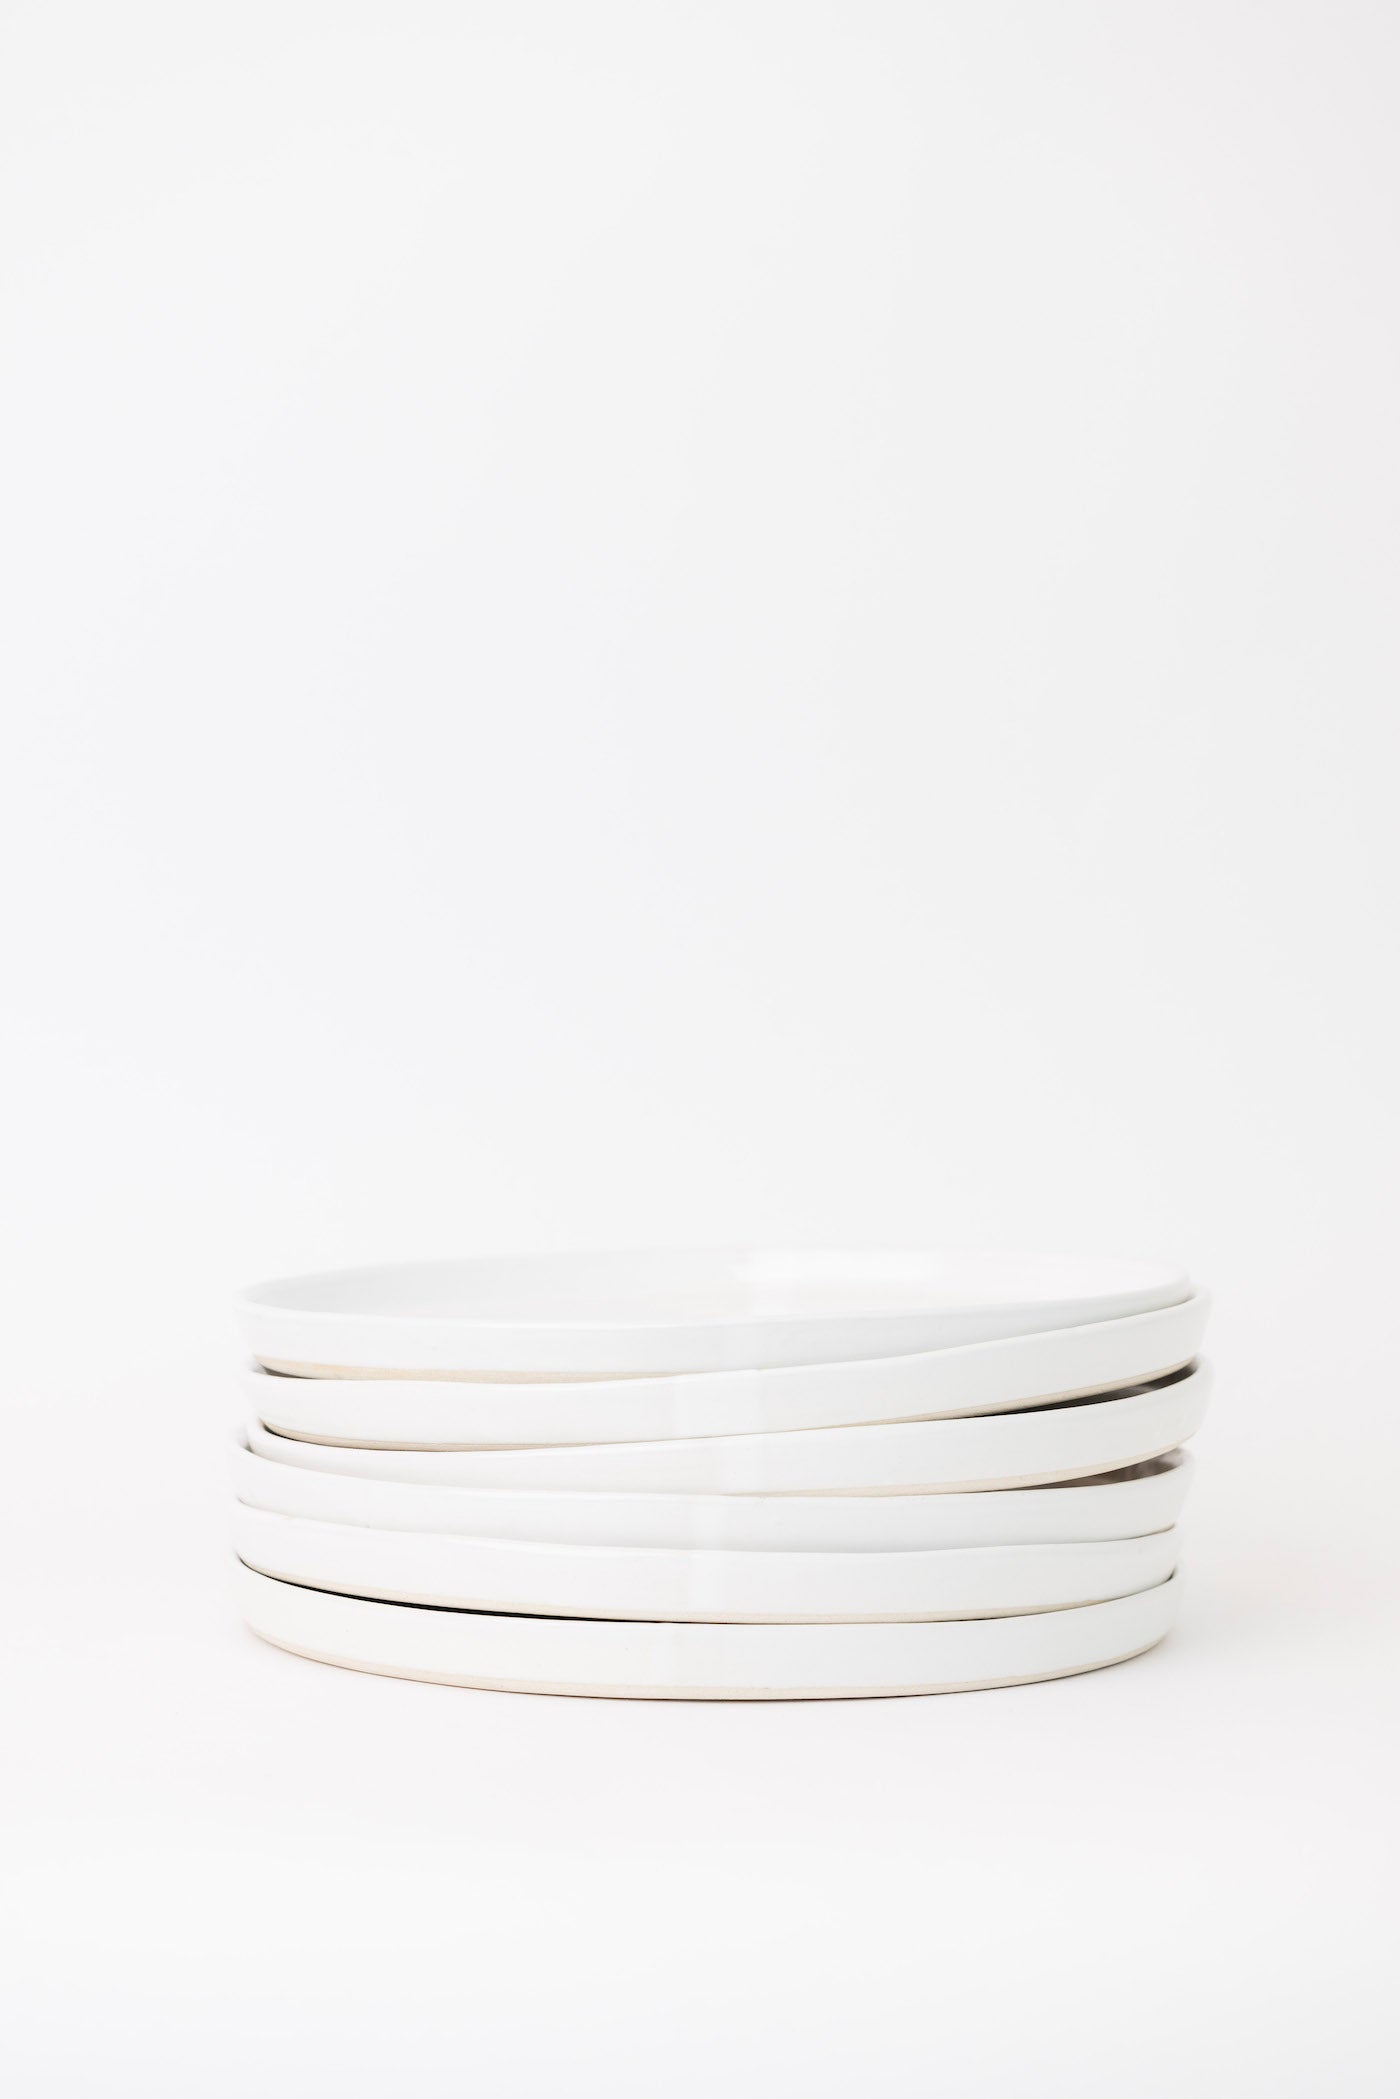 Sonnet Dinner Plate - Matte White/Glossy White - Set of 6